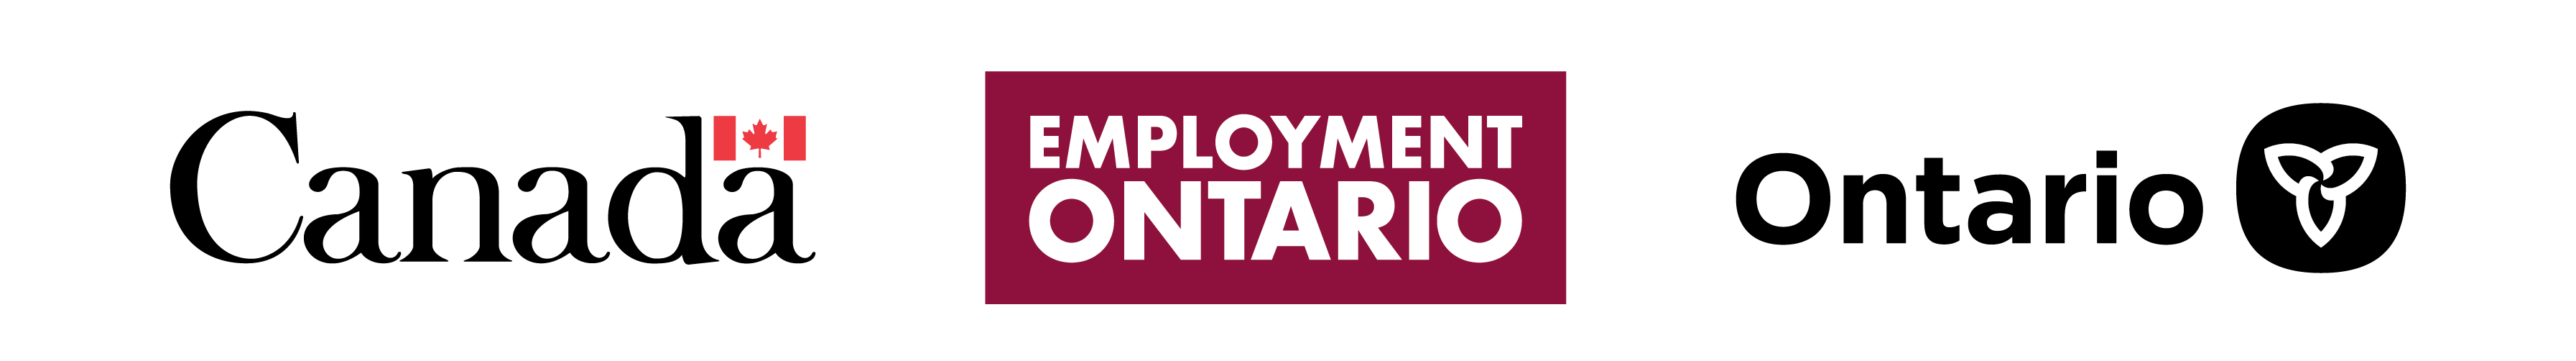 Employment Ontario tri-logo